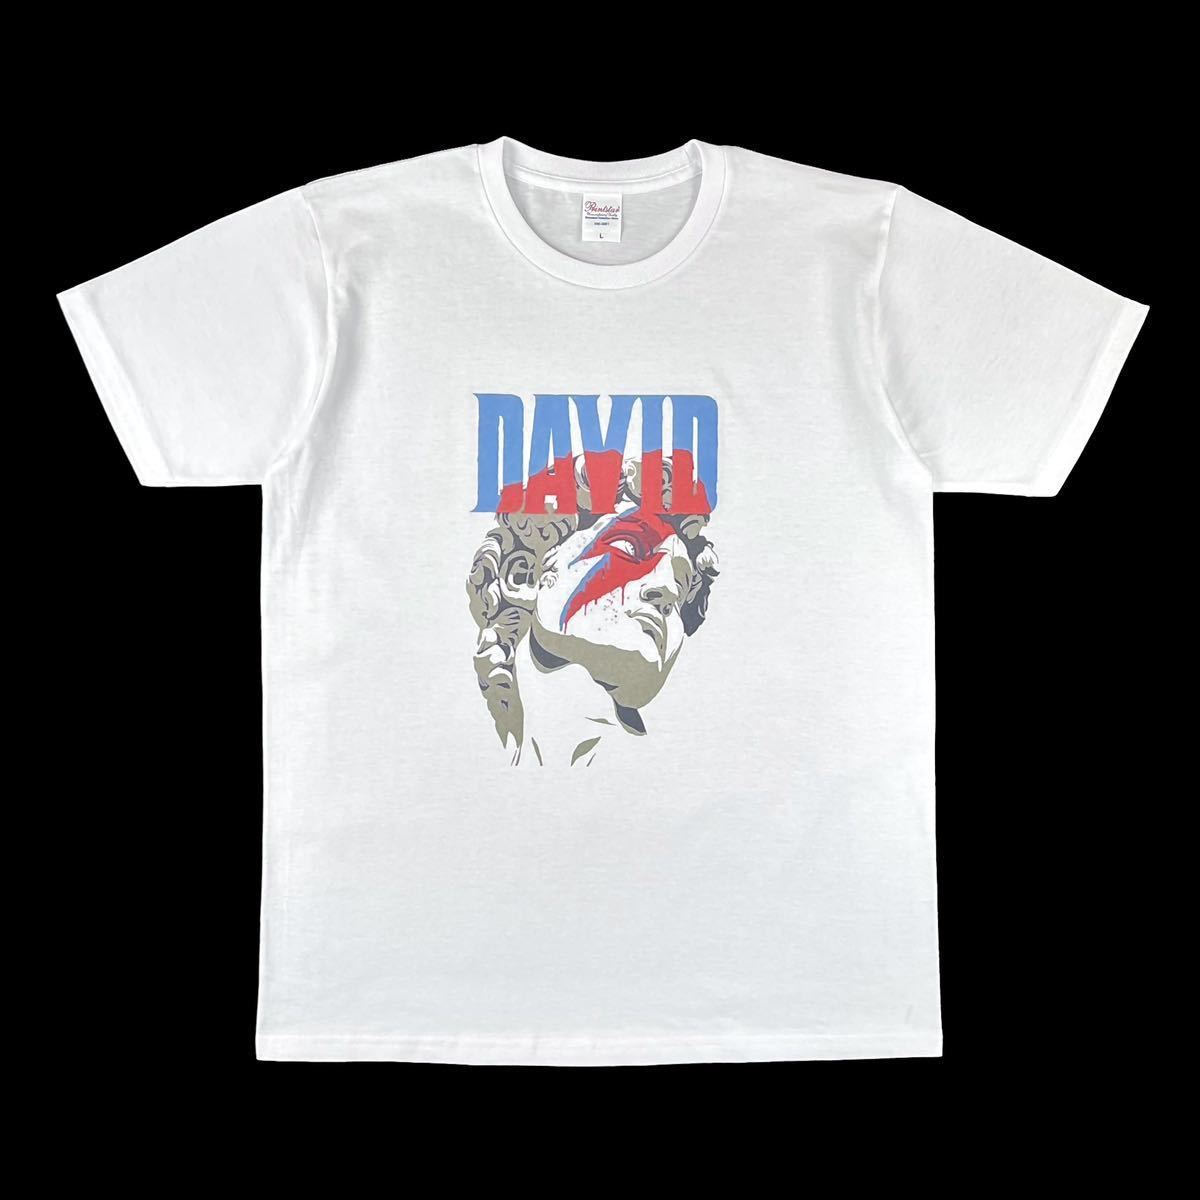 人気商品の BOWIE DAVID ミケランジェロ ダビデ像 新品 デヴィッド Mサイズ 白 ビッグ タイト Tシャツ メイク サンダー 雷